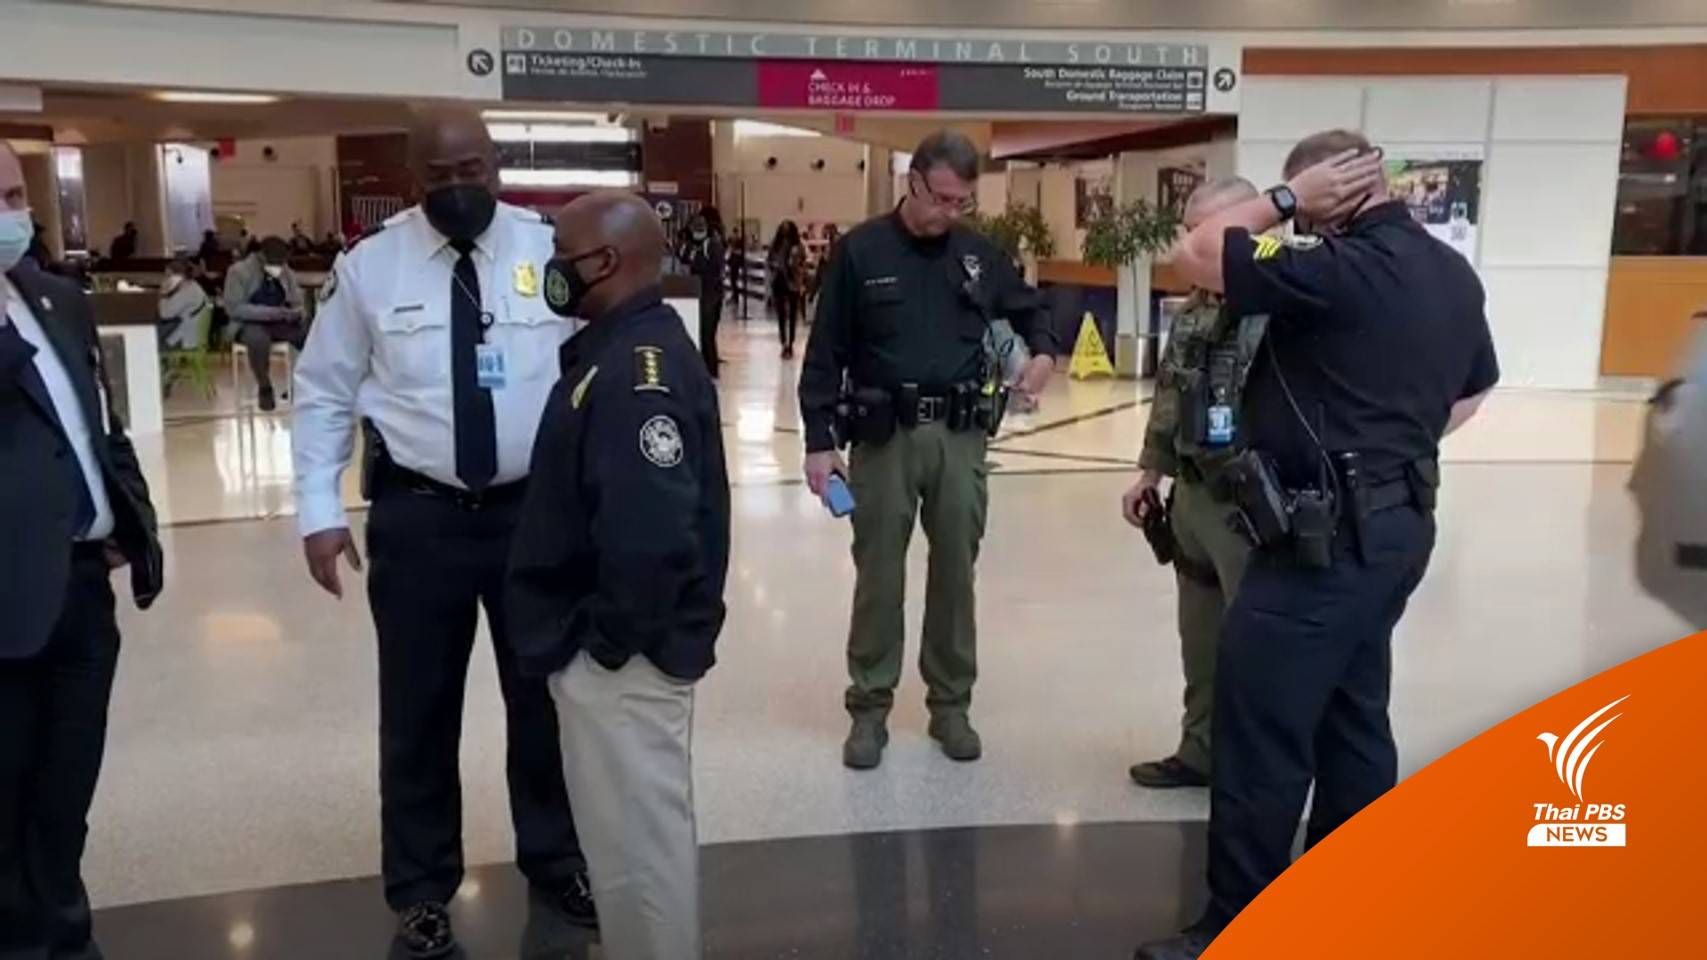 ตำรวจสหรัฐฯ เร่งติดตามเจ้าของปืนลั่นในสนามบิน เจ็บ 3 คน